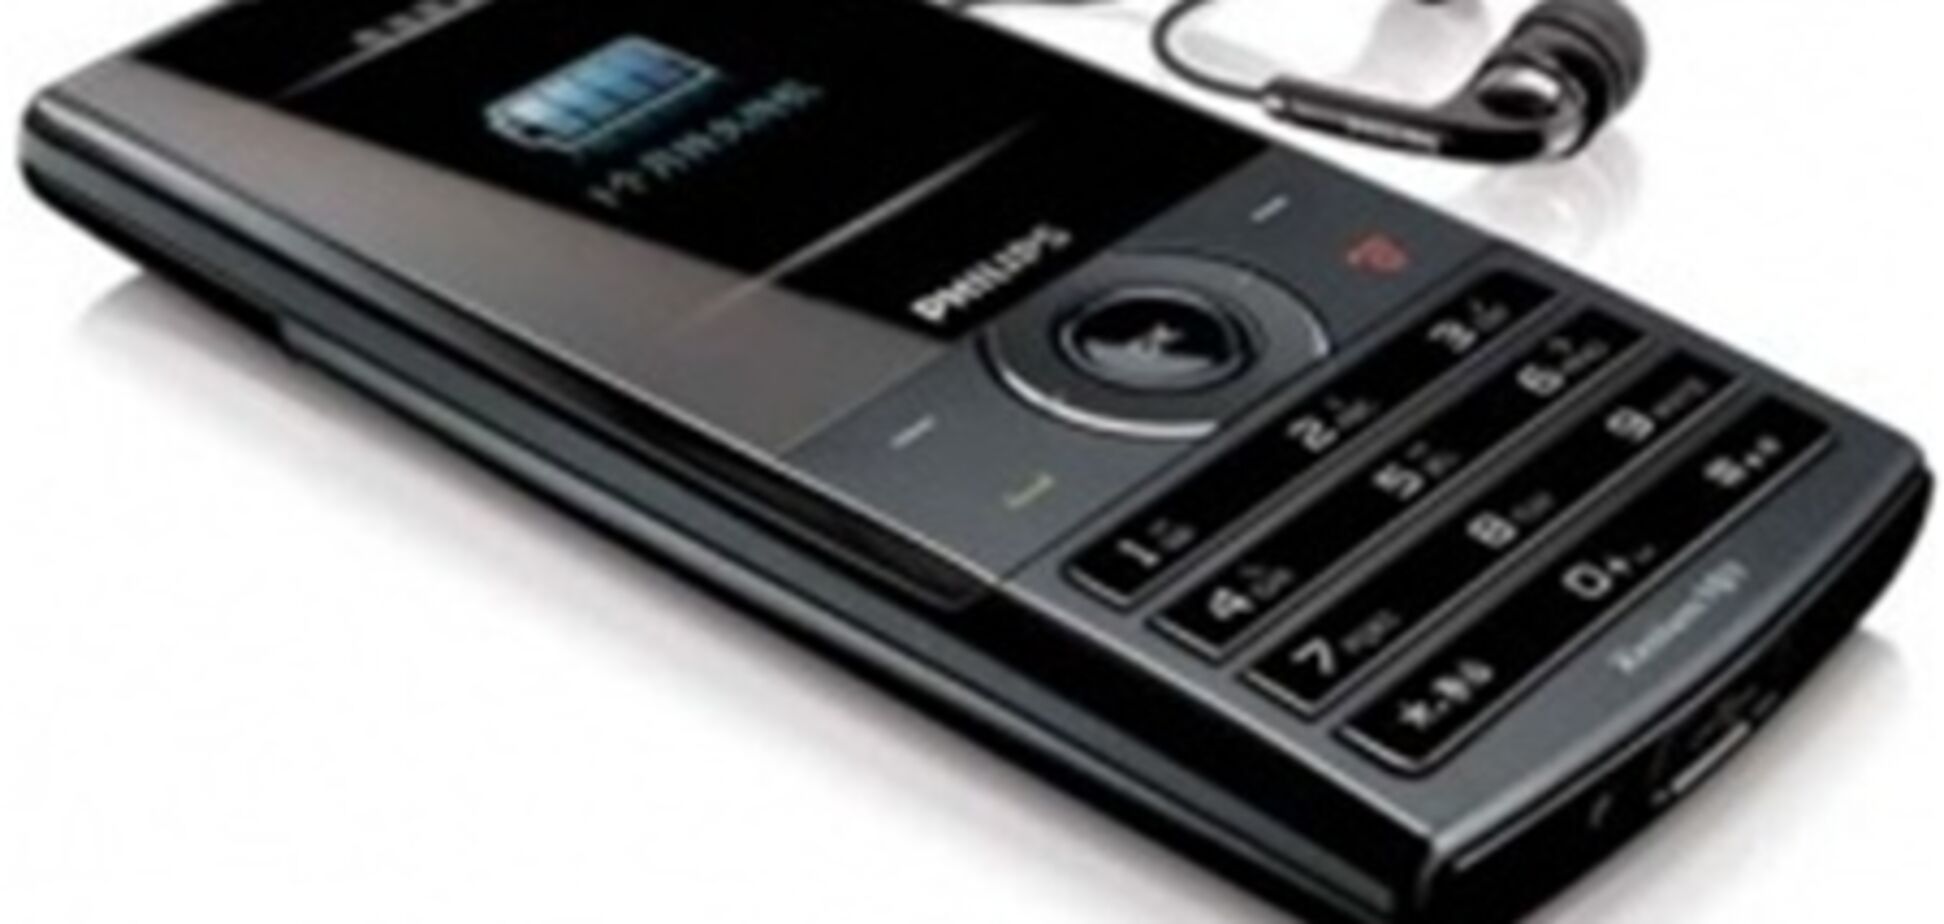 Philips анонсировала новый телефон серии Xenium - функциональный и 'долгоиграющий' X620